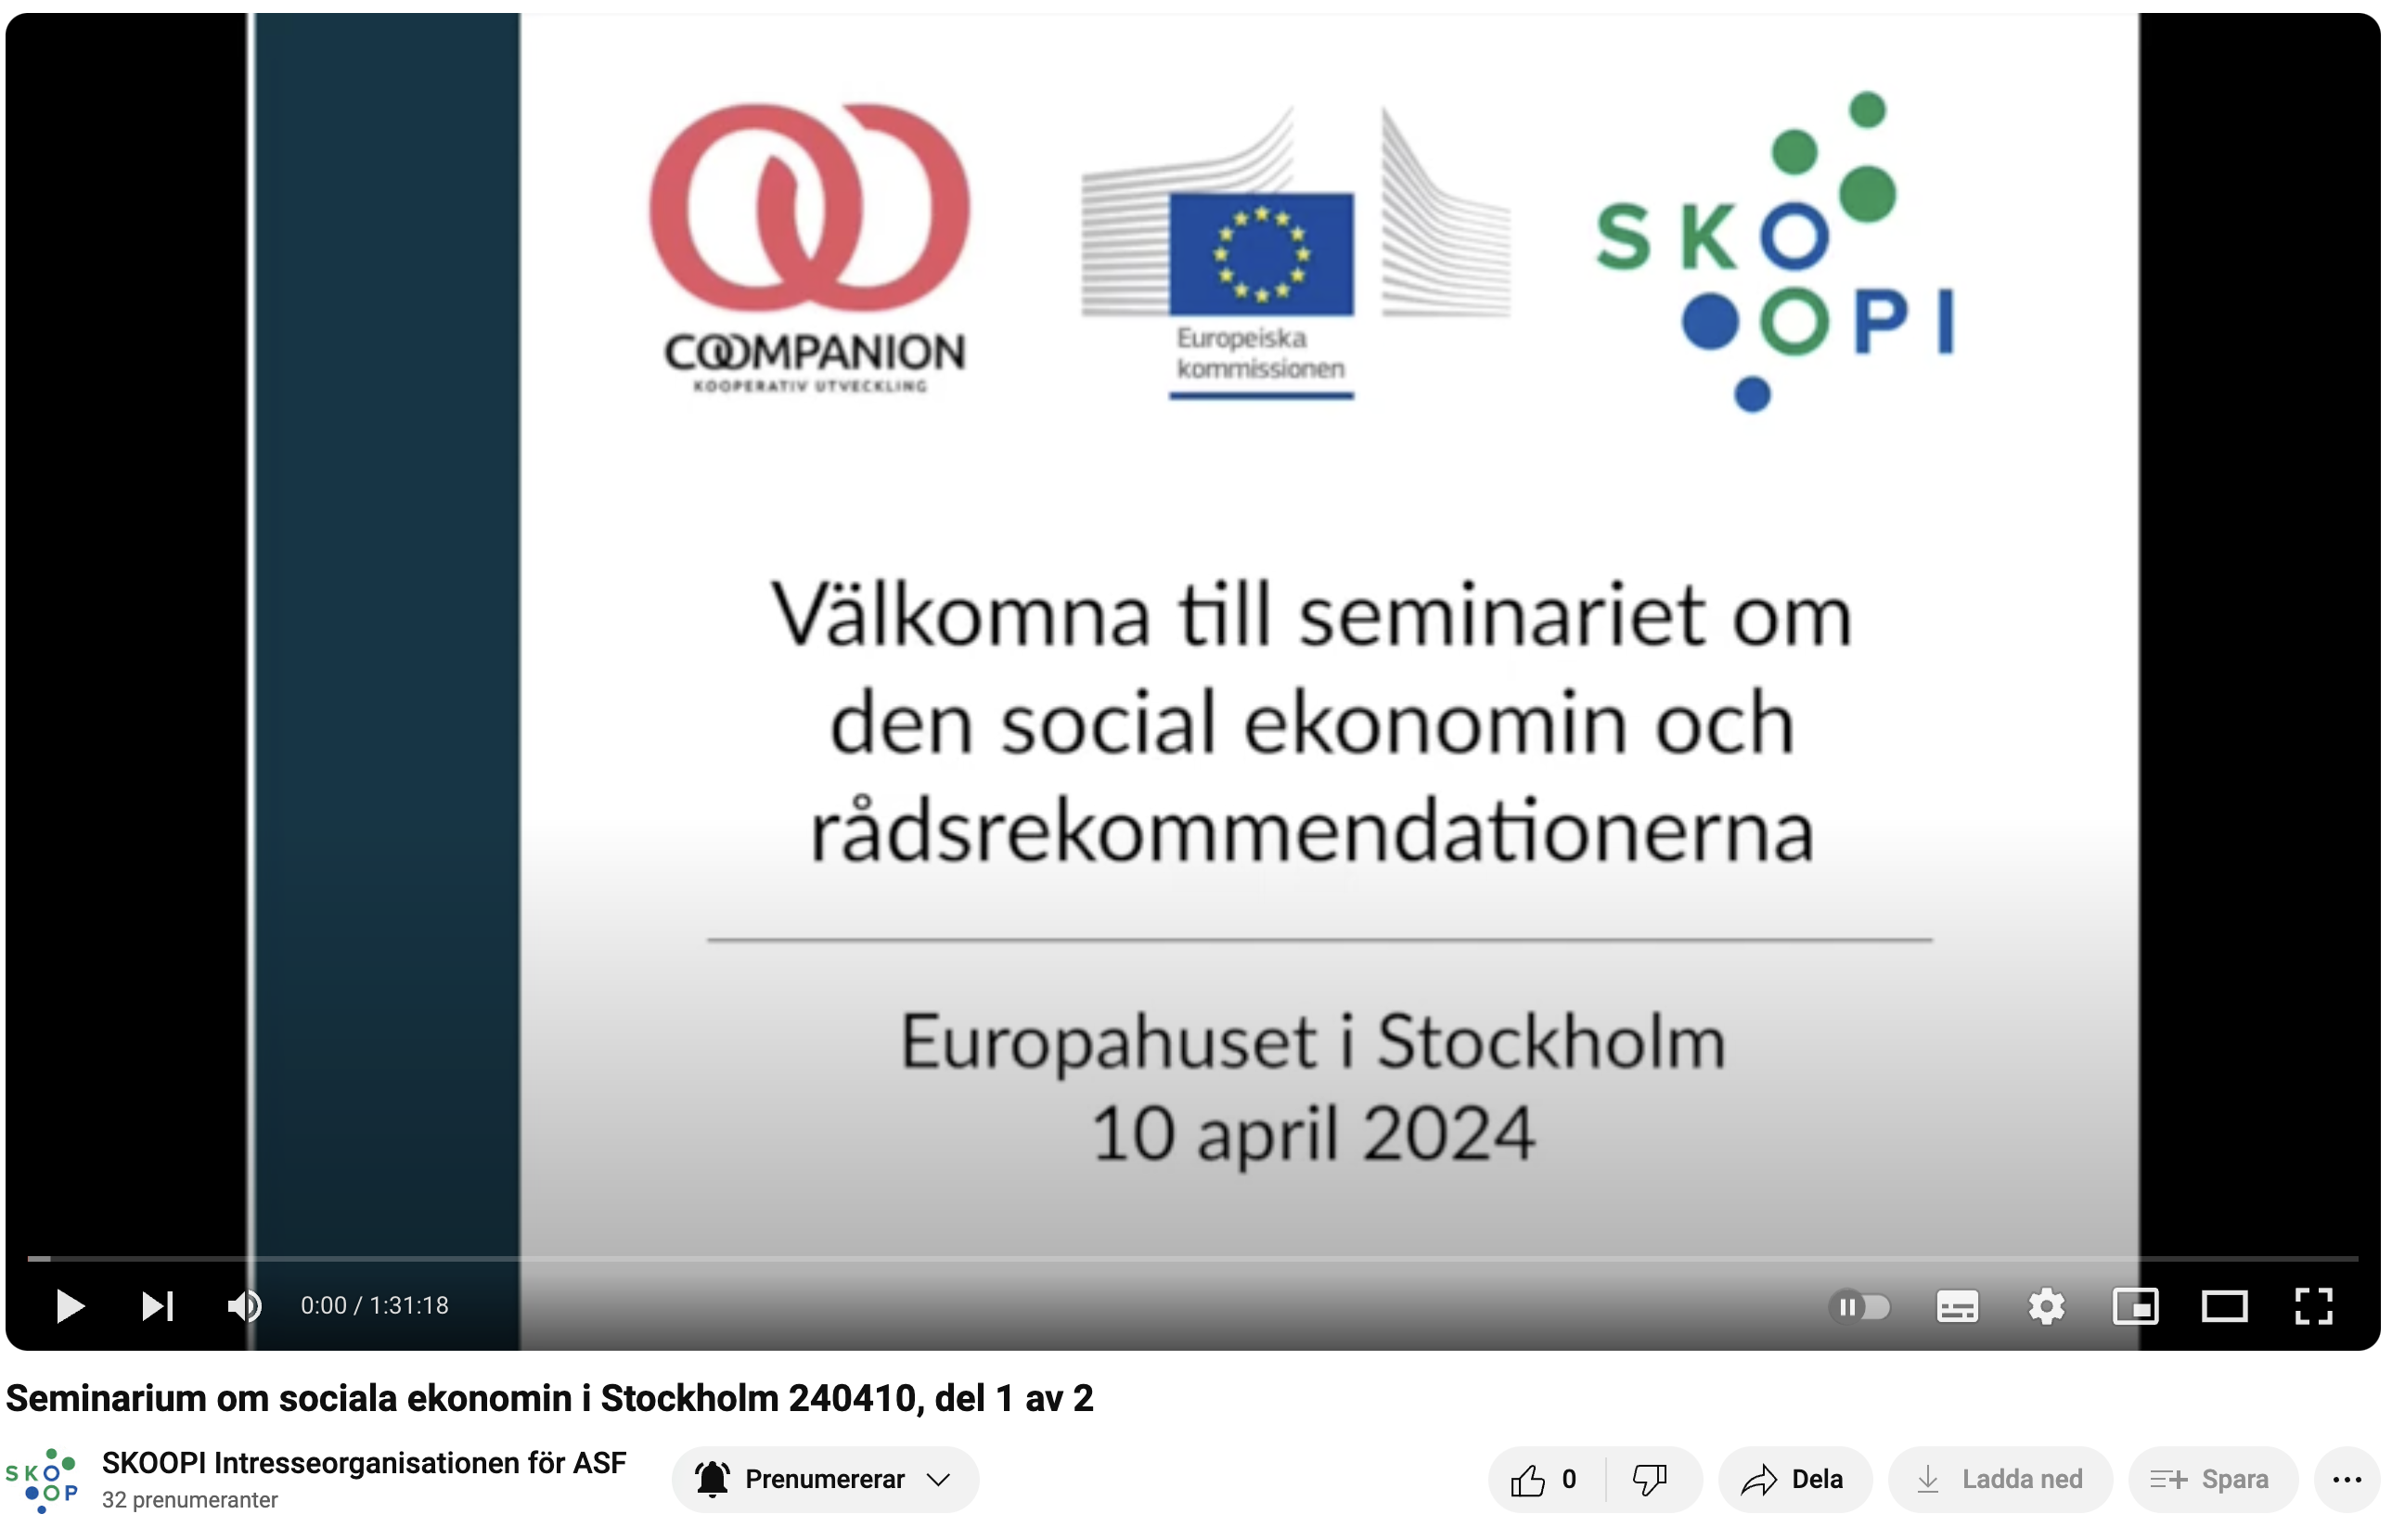 Här kan du se seminariet om den sociala ekonomin från den 10 april 2024